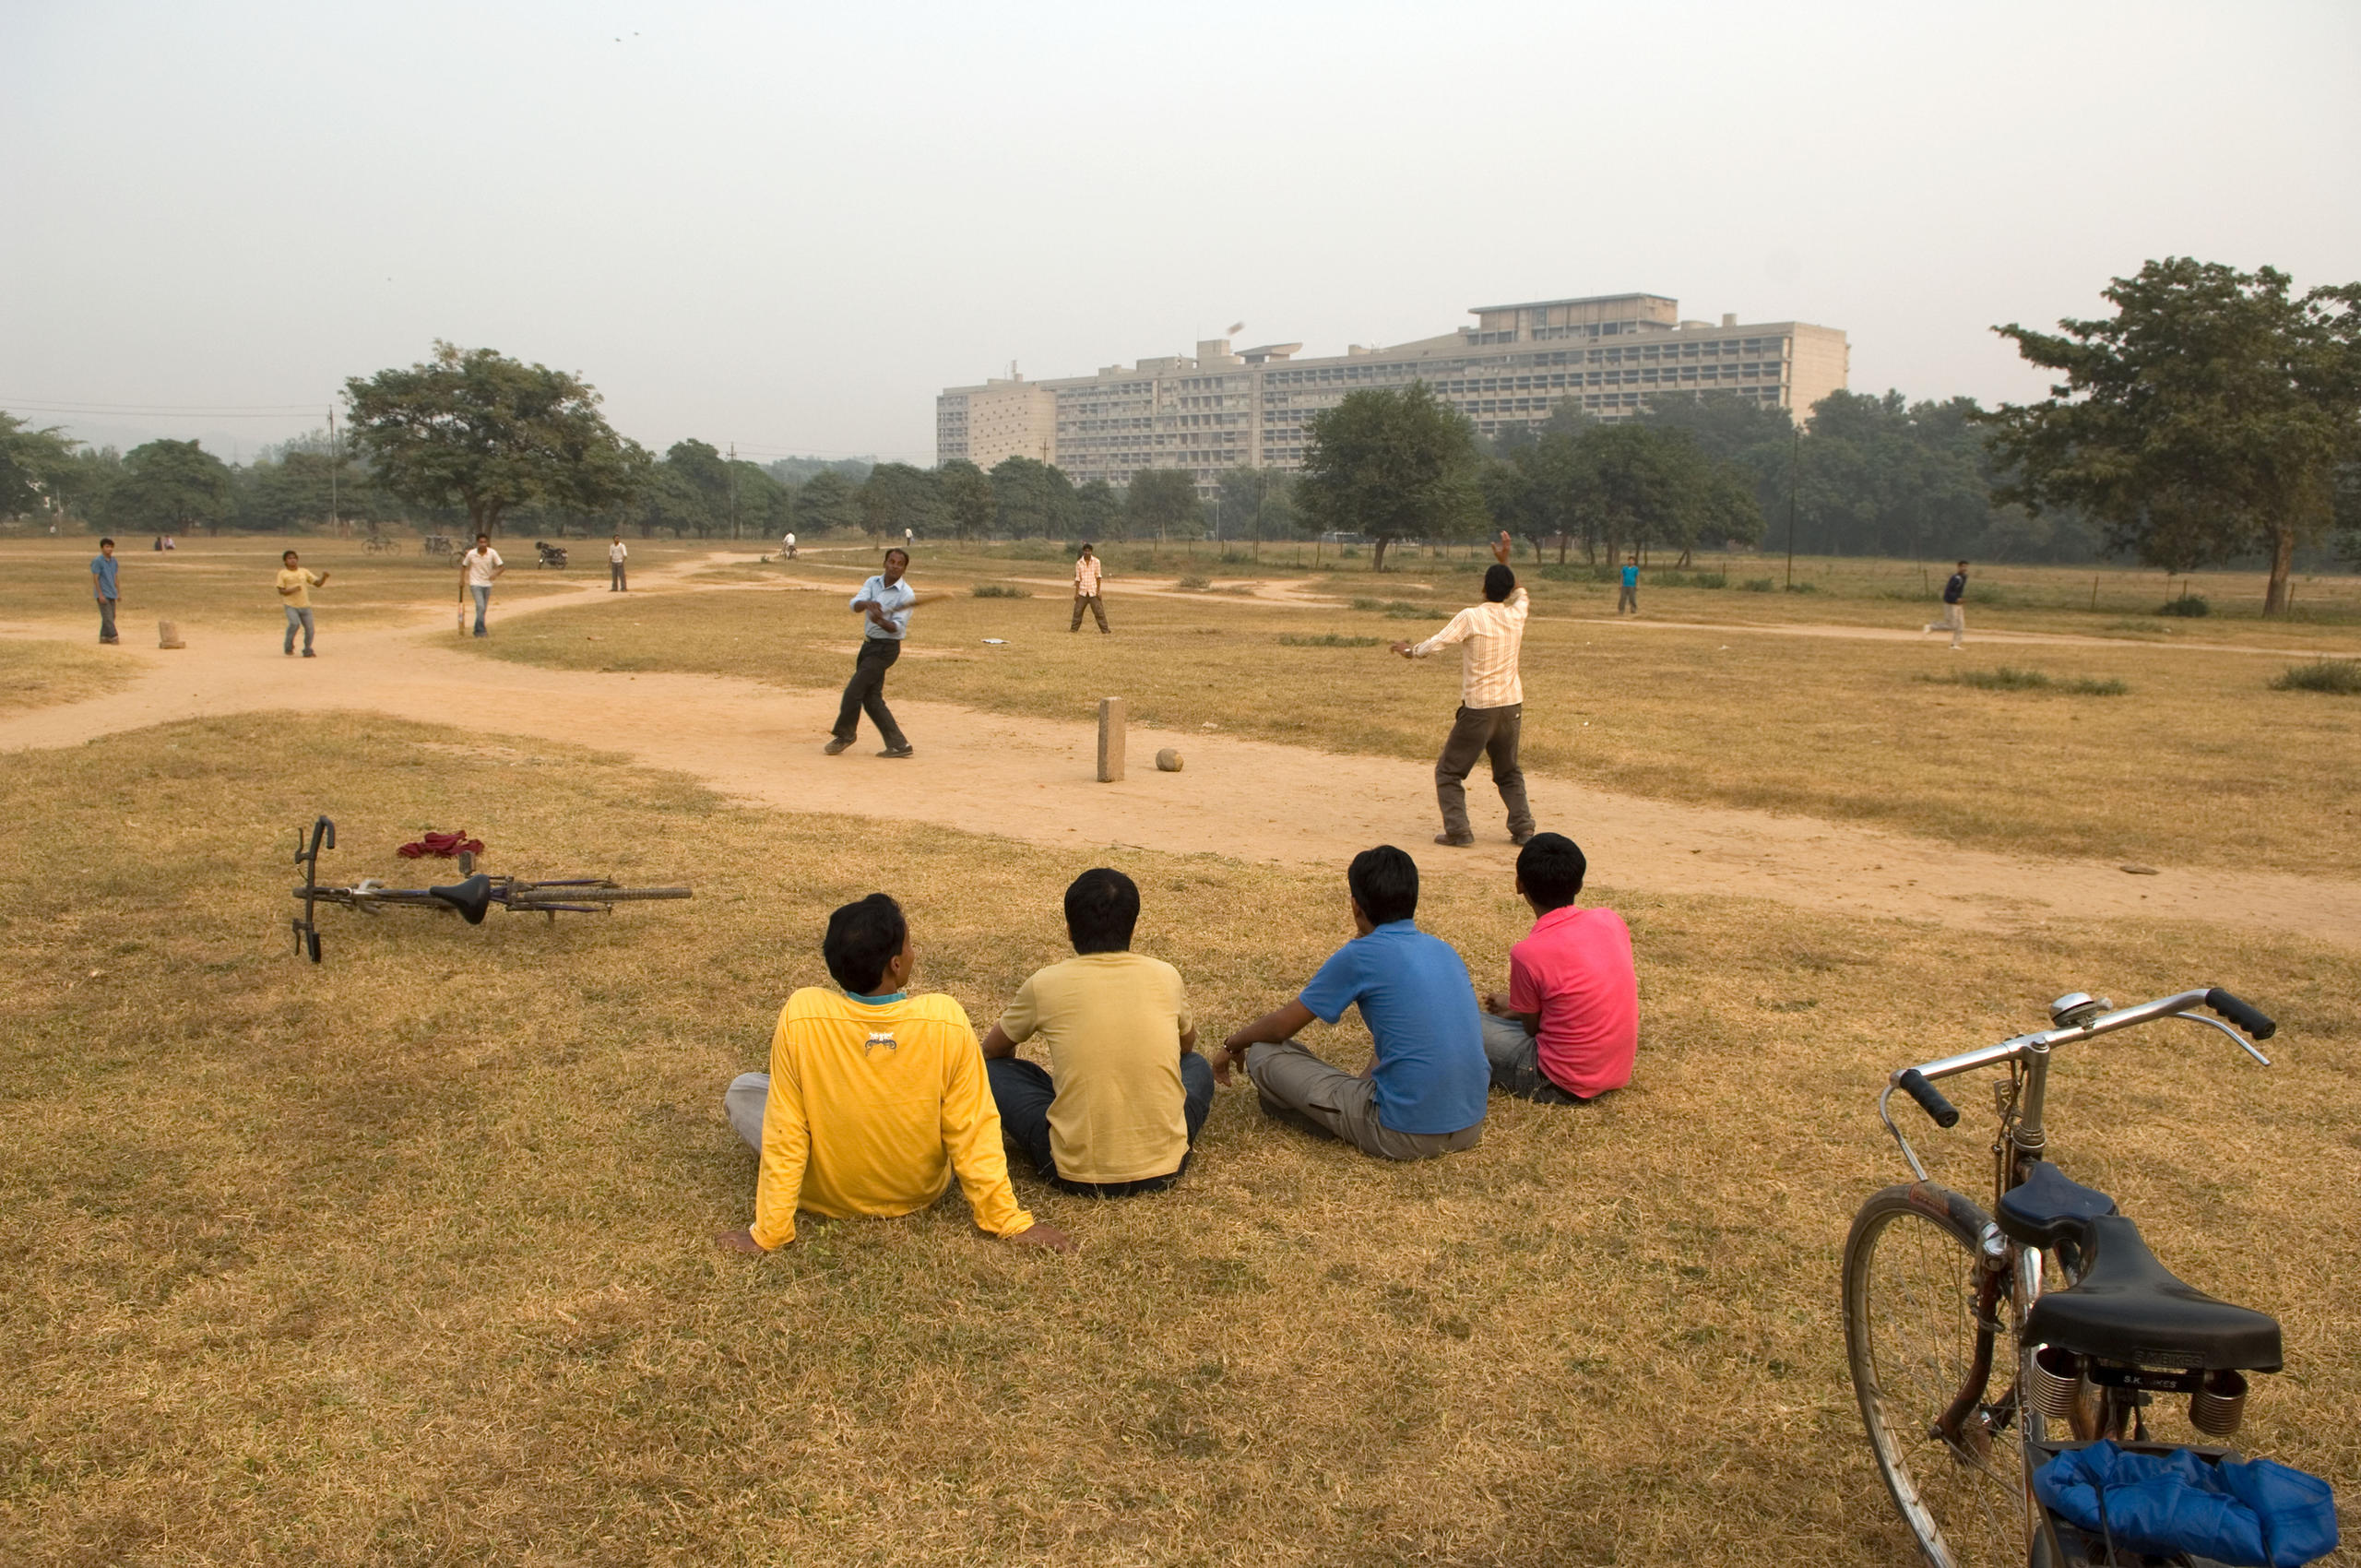 Kricketspiel vor dem Capital Complex von Le Corbusier in Chandigarh